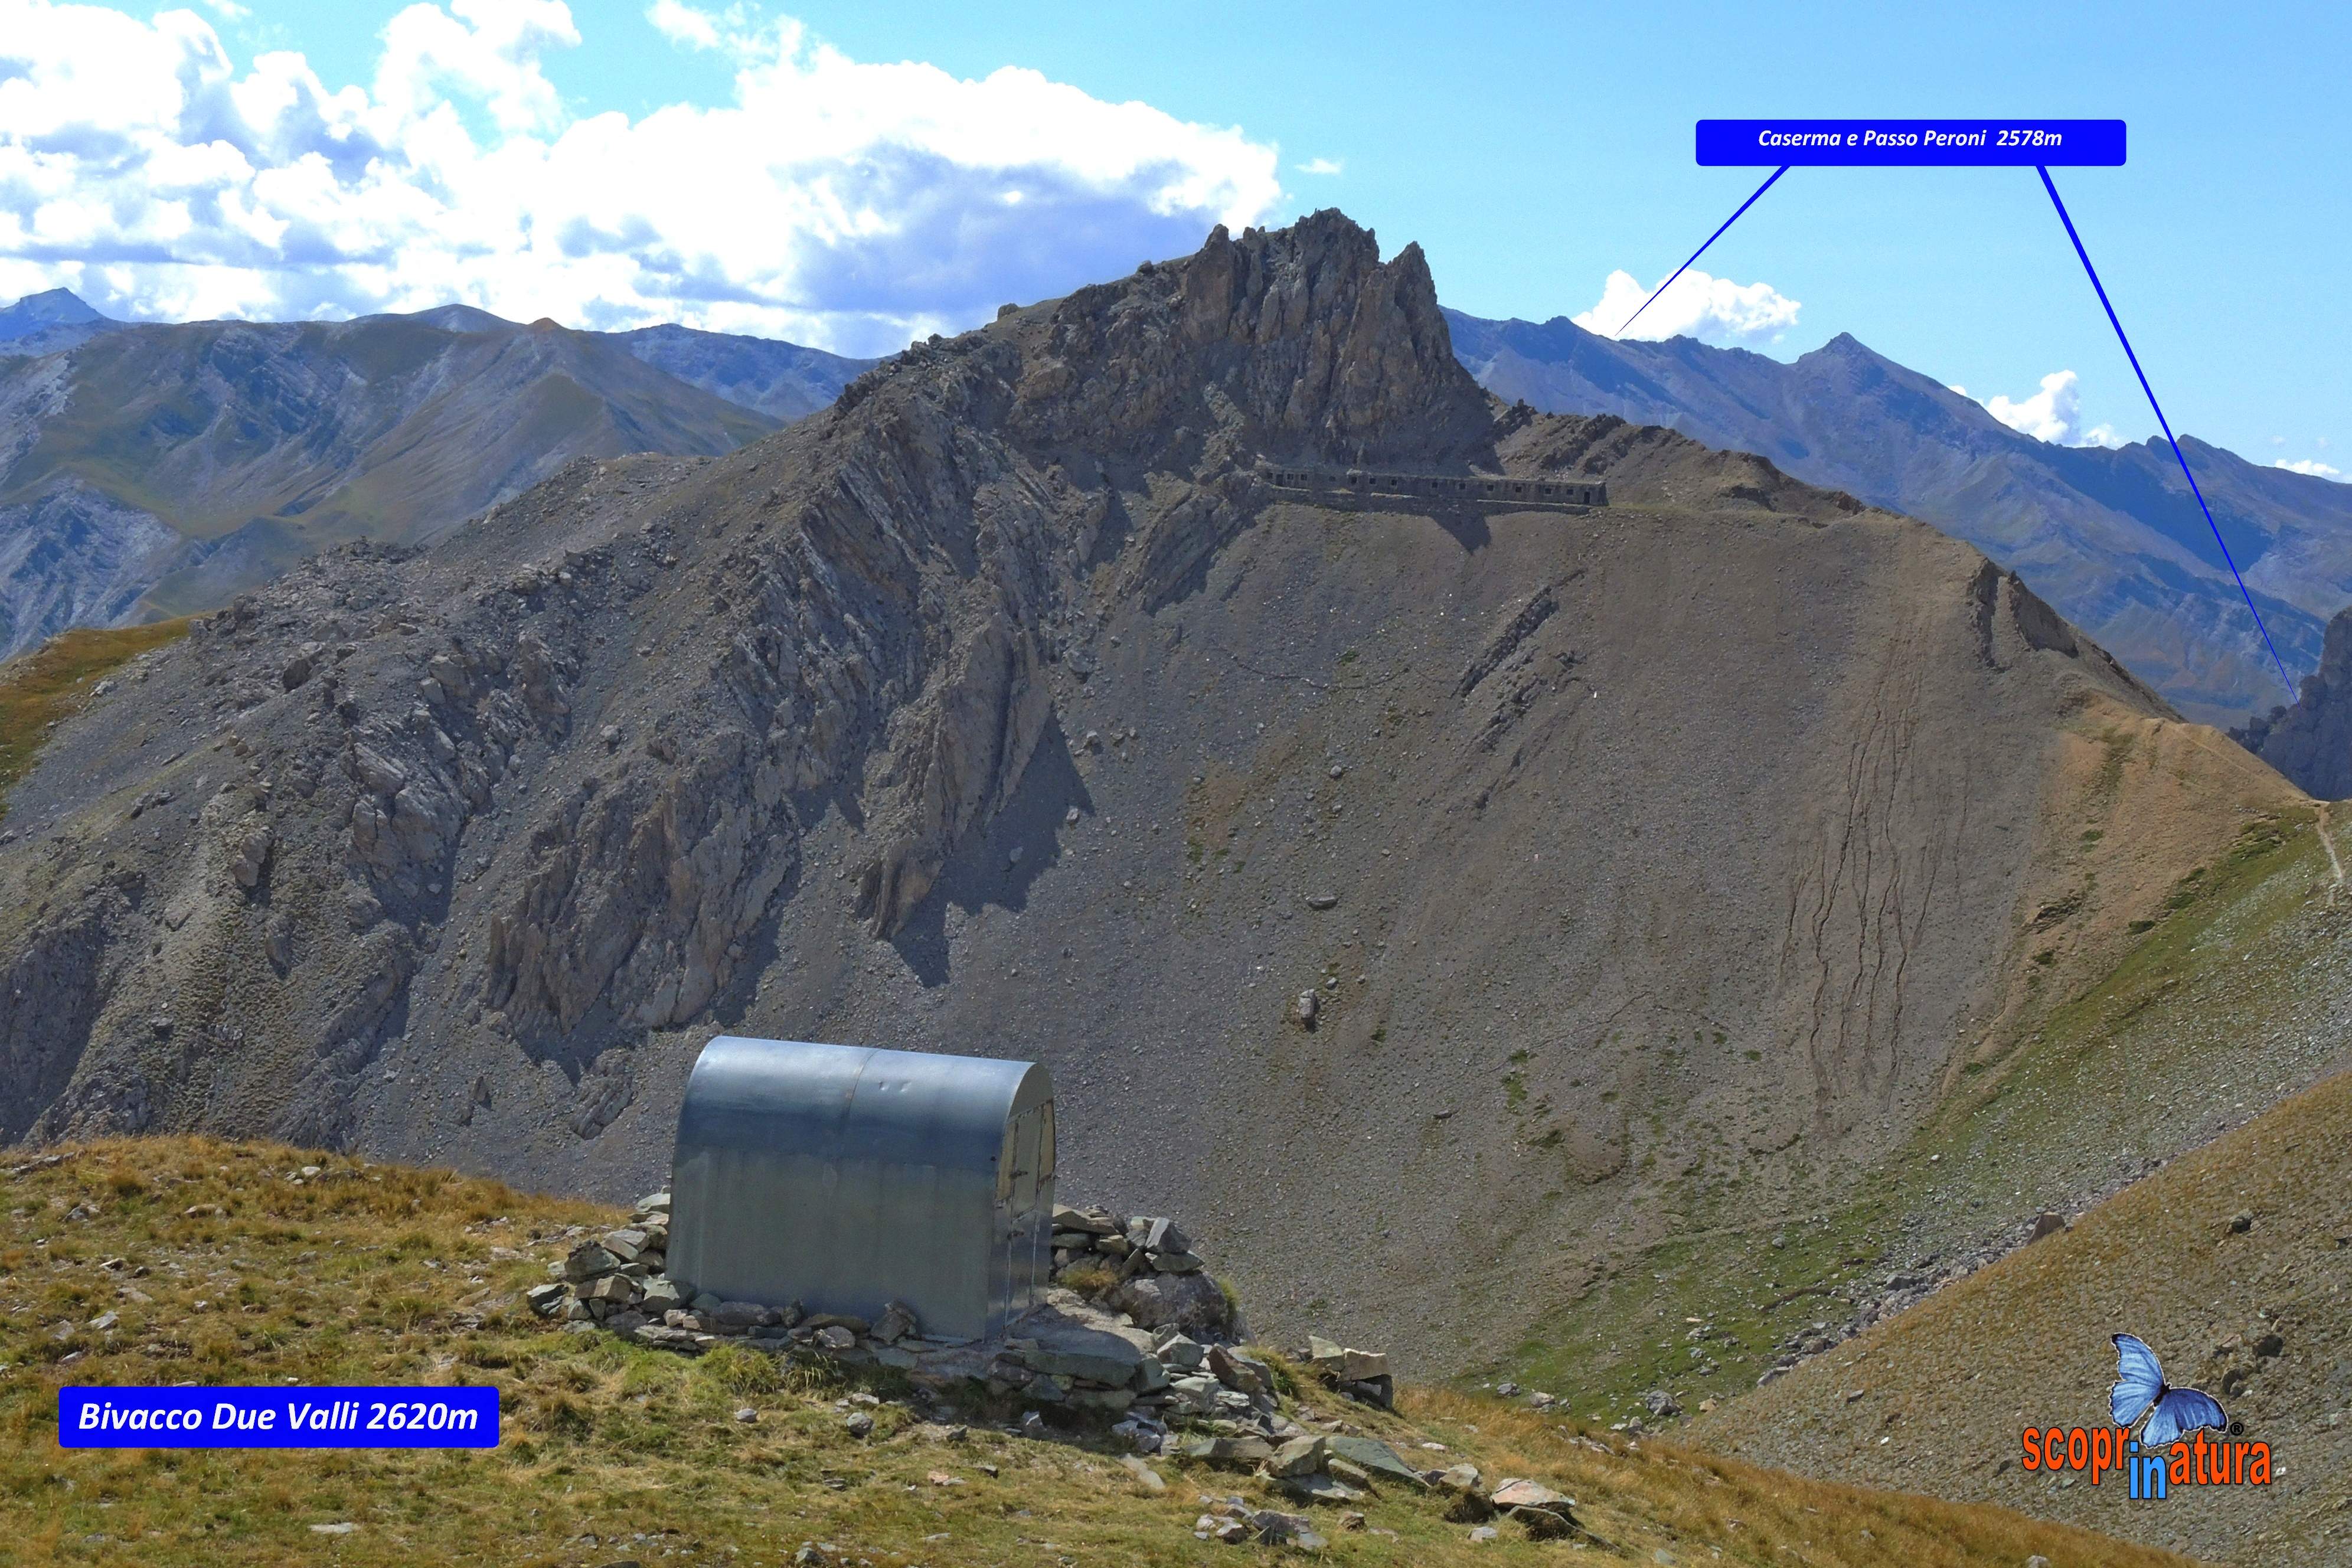 Bivacco Due Valle 2620m e vista del Passo Peroni  2578m